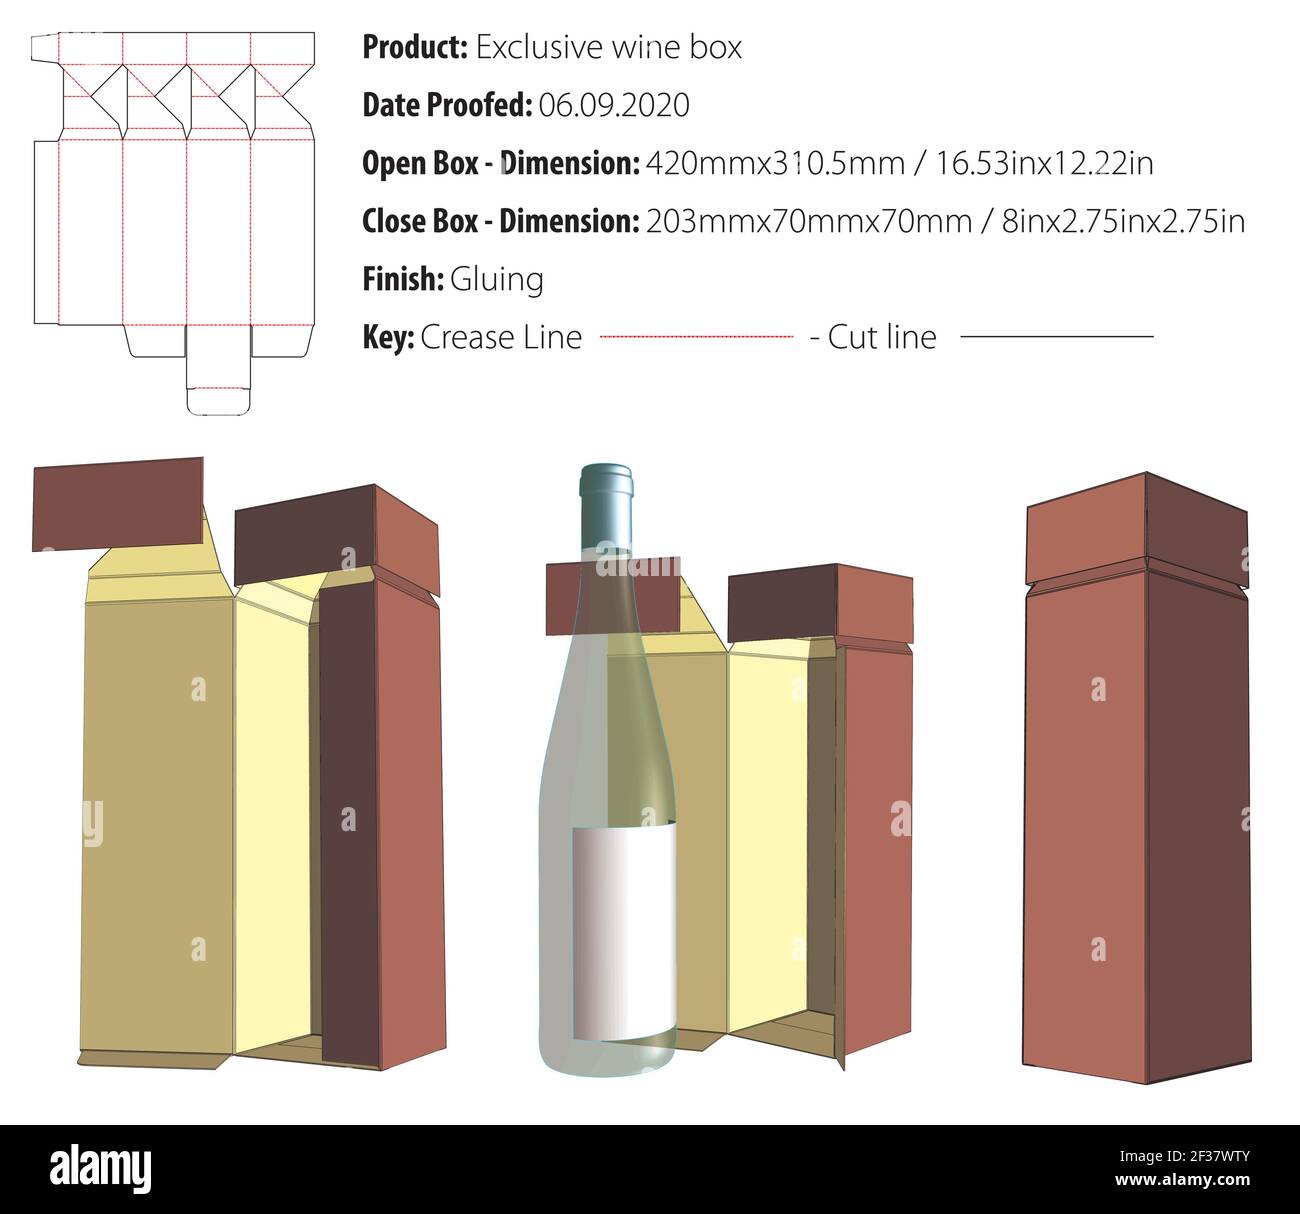 Exklusive Weinbox Verpackung Design Vorlage kleben Stanzform geschnitten - Vektor Stock Vektor